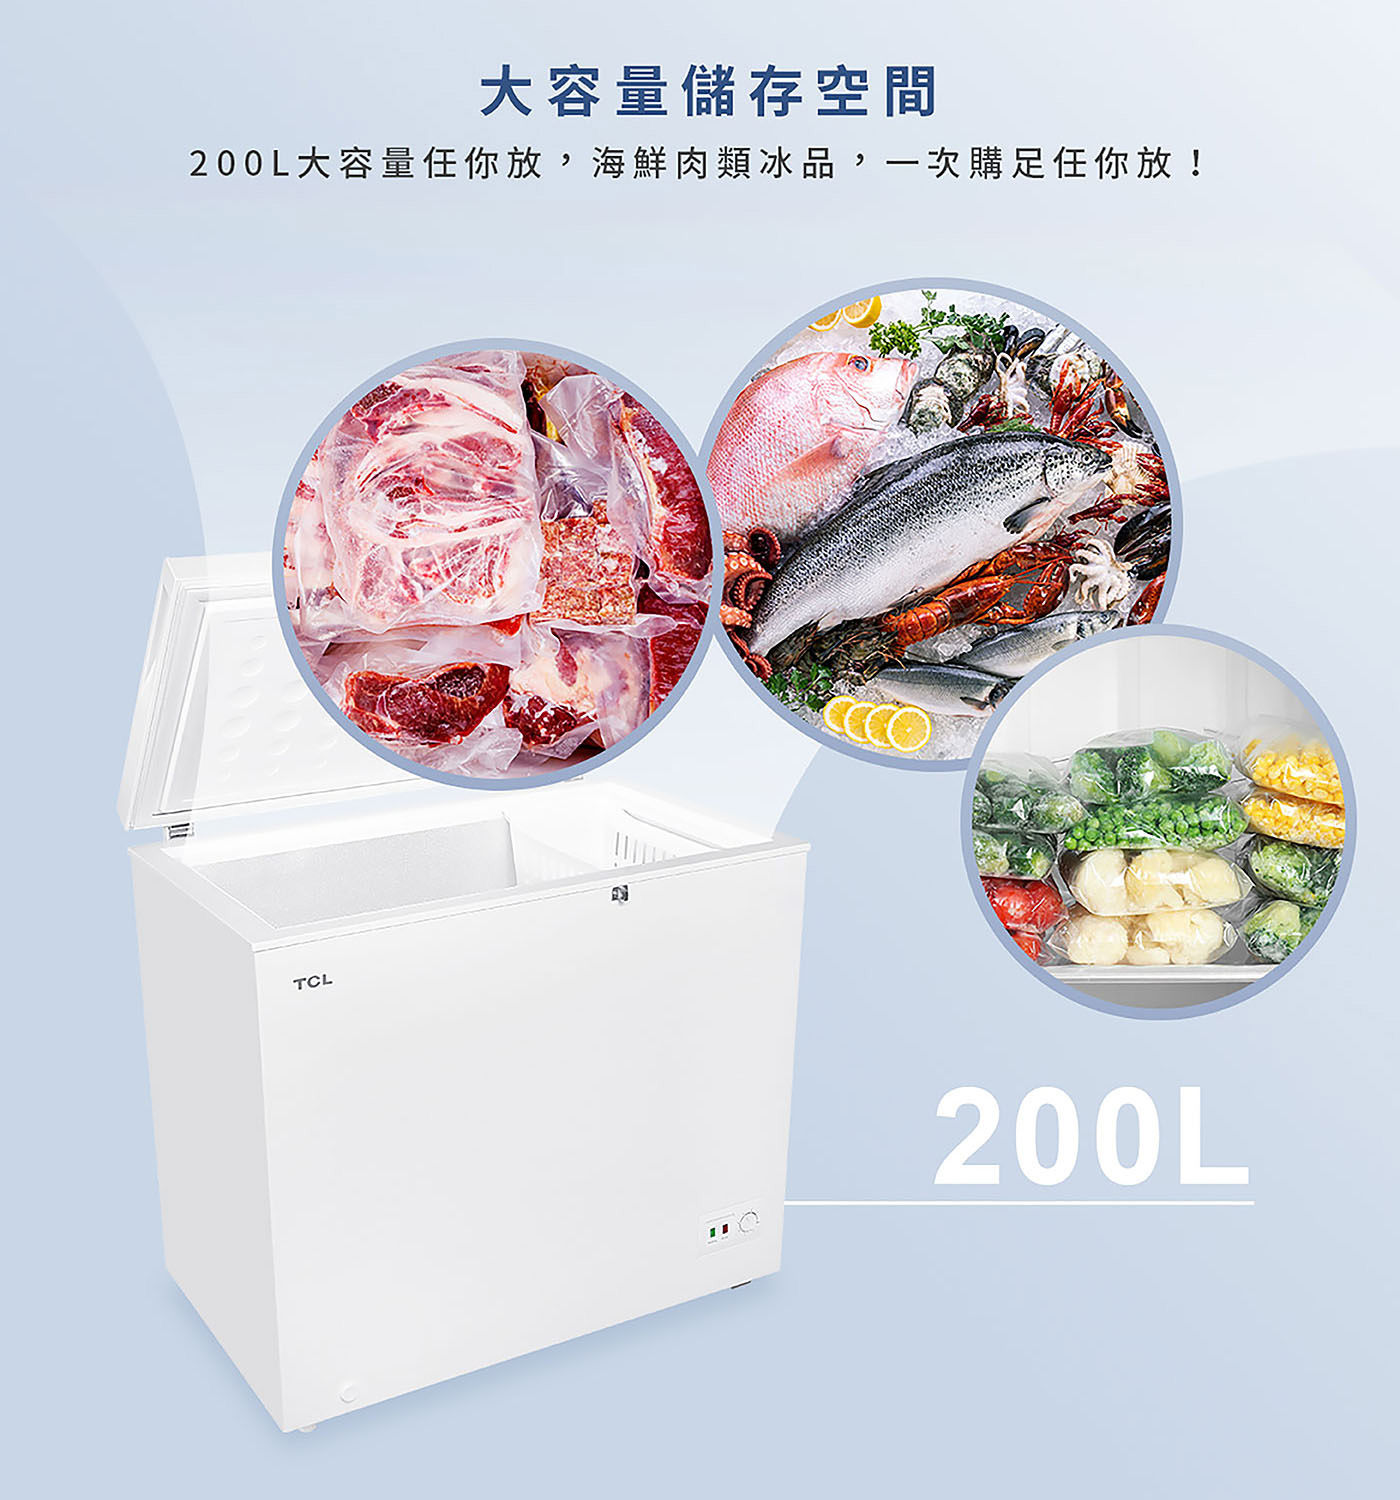 TCL 200公升 臥式定頻冷凍櫃 F200CFW大容量儲存空間/長時間持久鎖冷/簡約白外型/7檔溫度控制